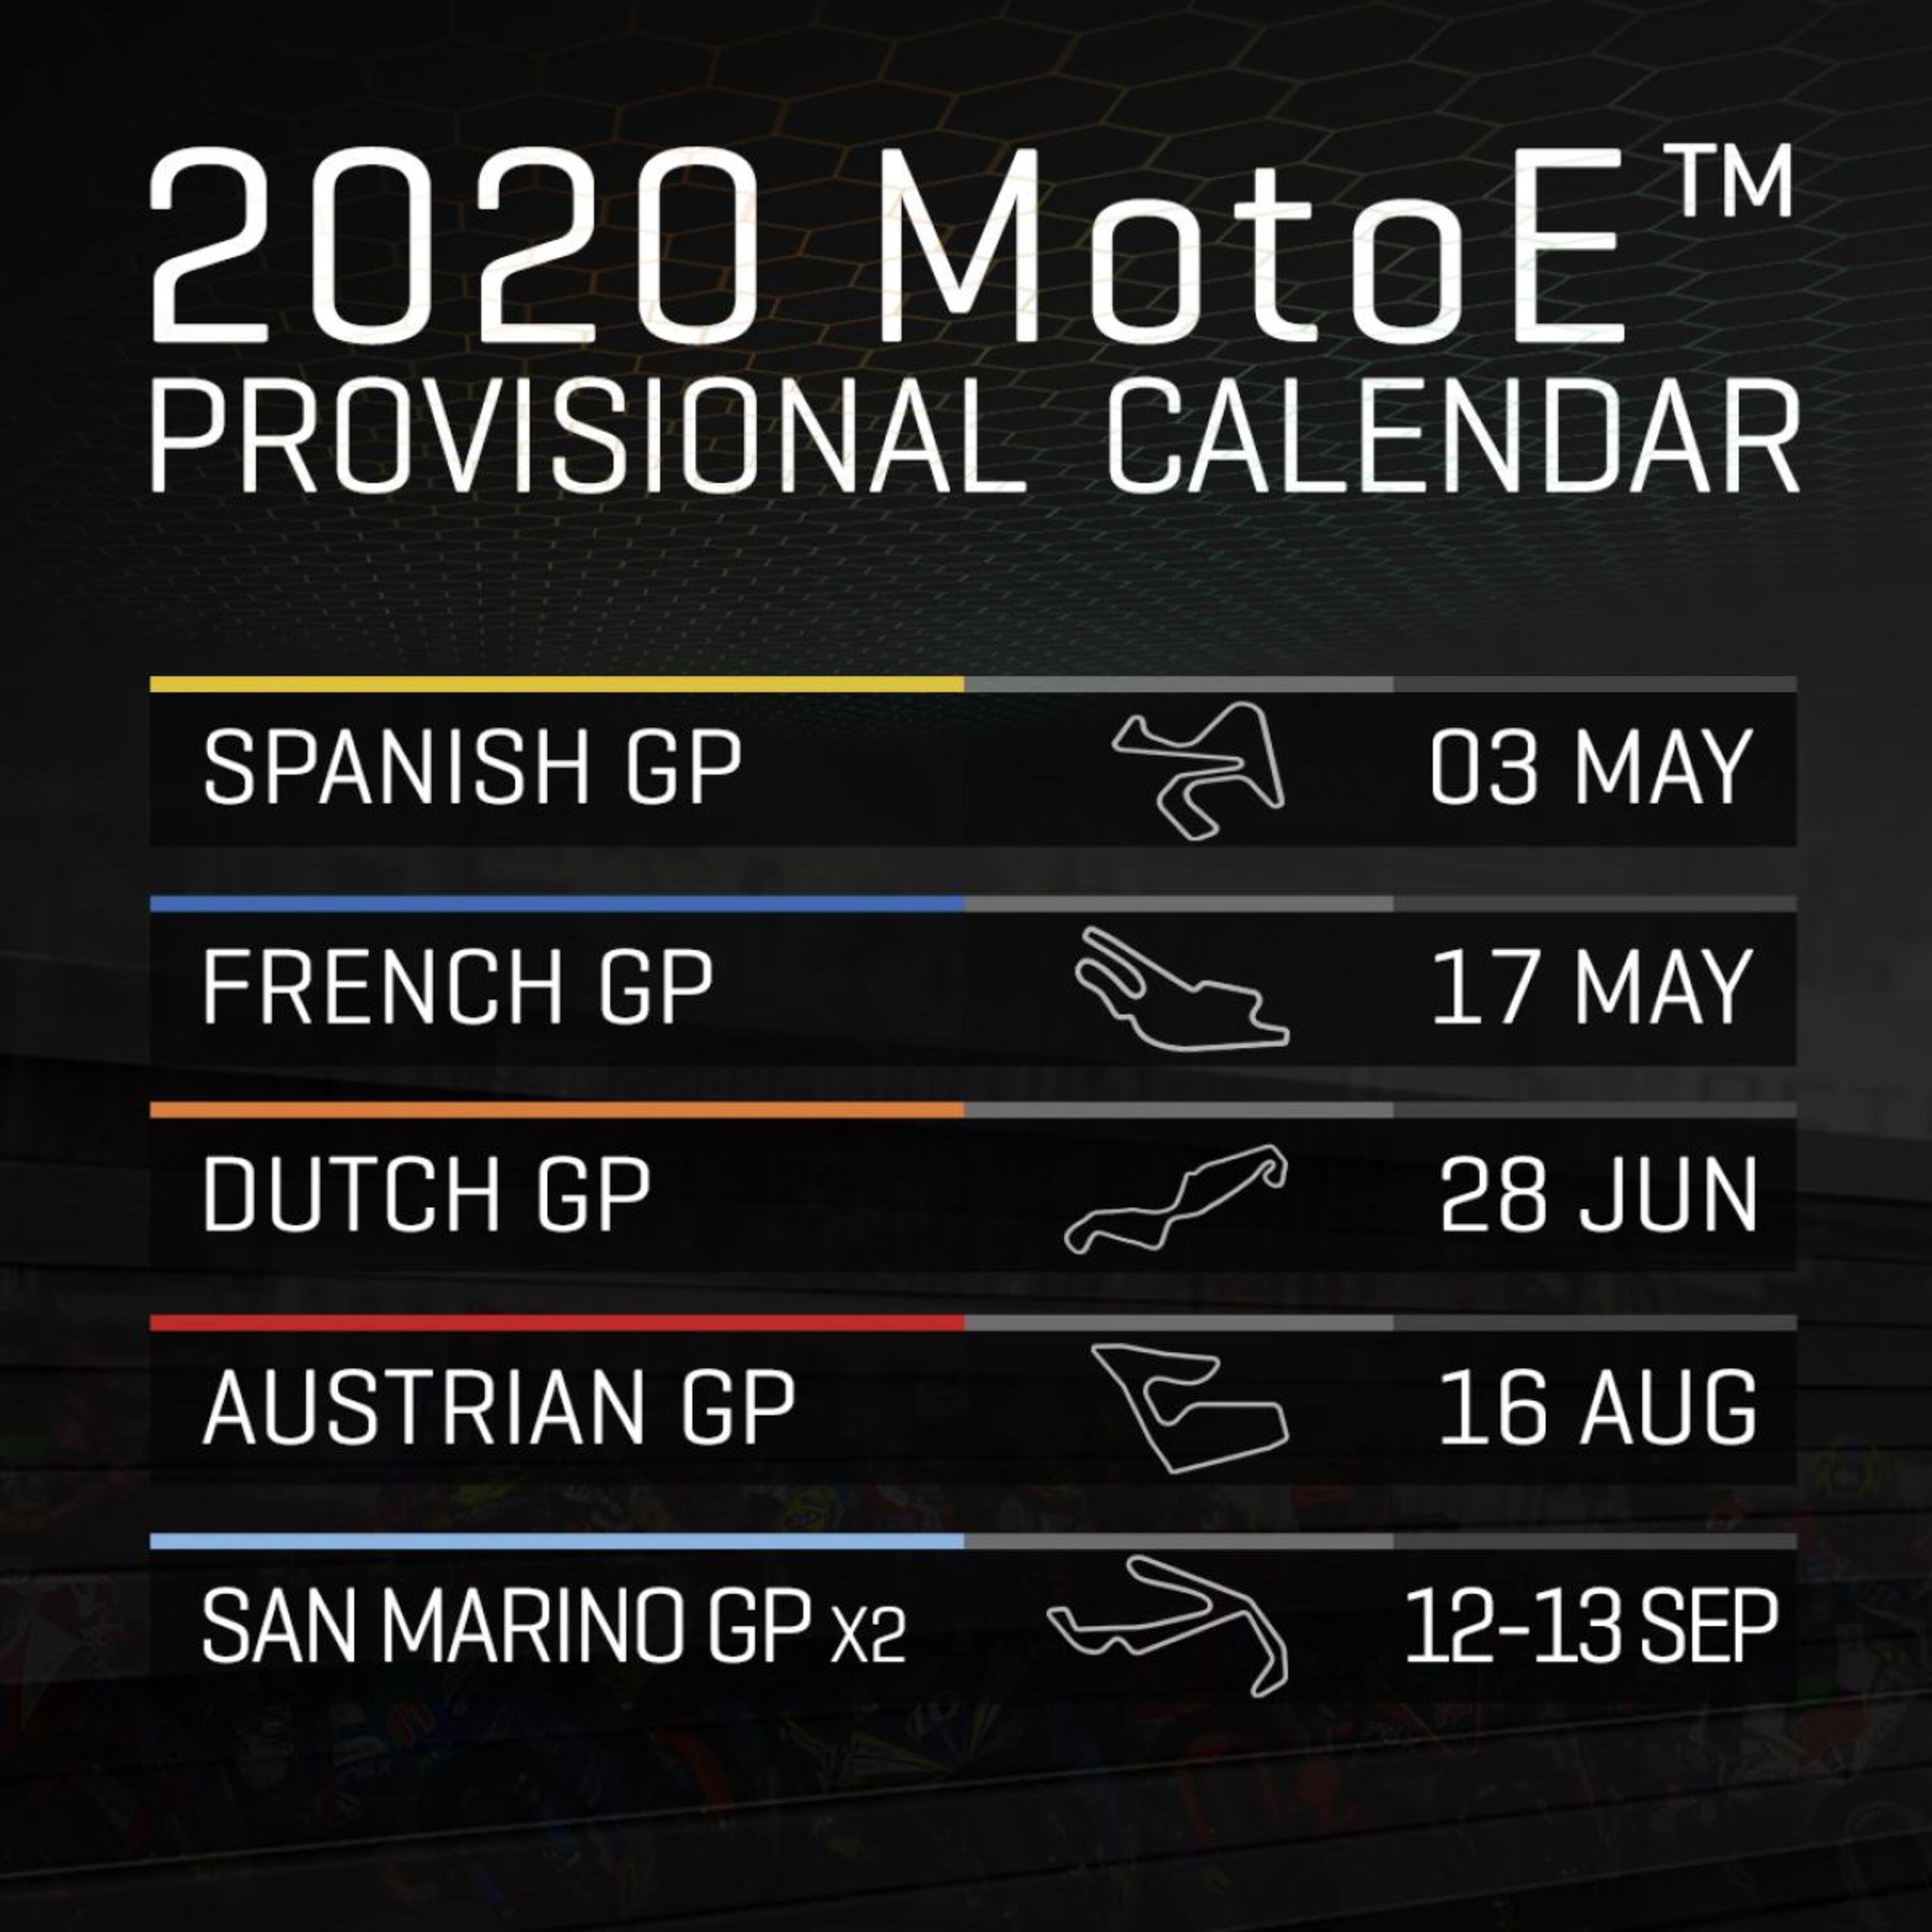 Calendario MotoE 2020. Date e circuiti